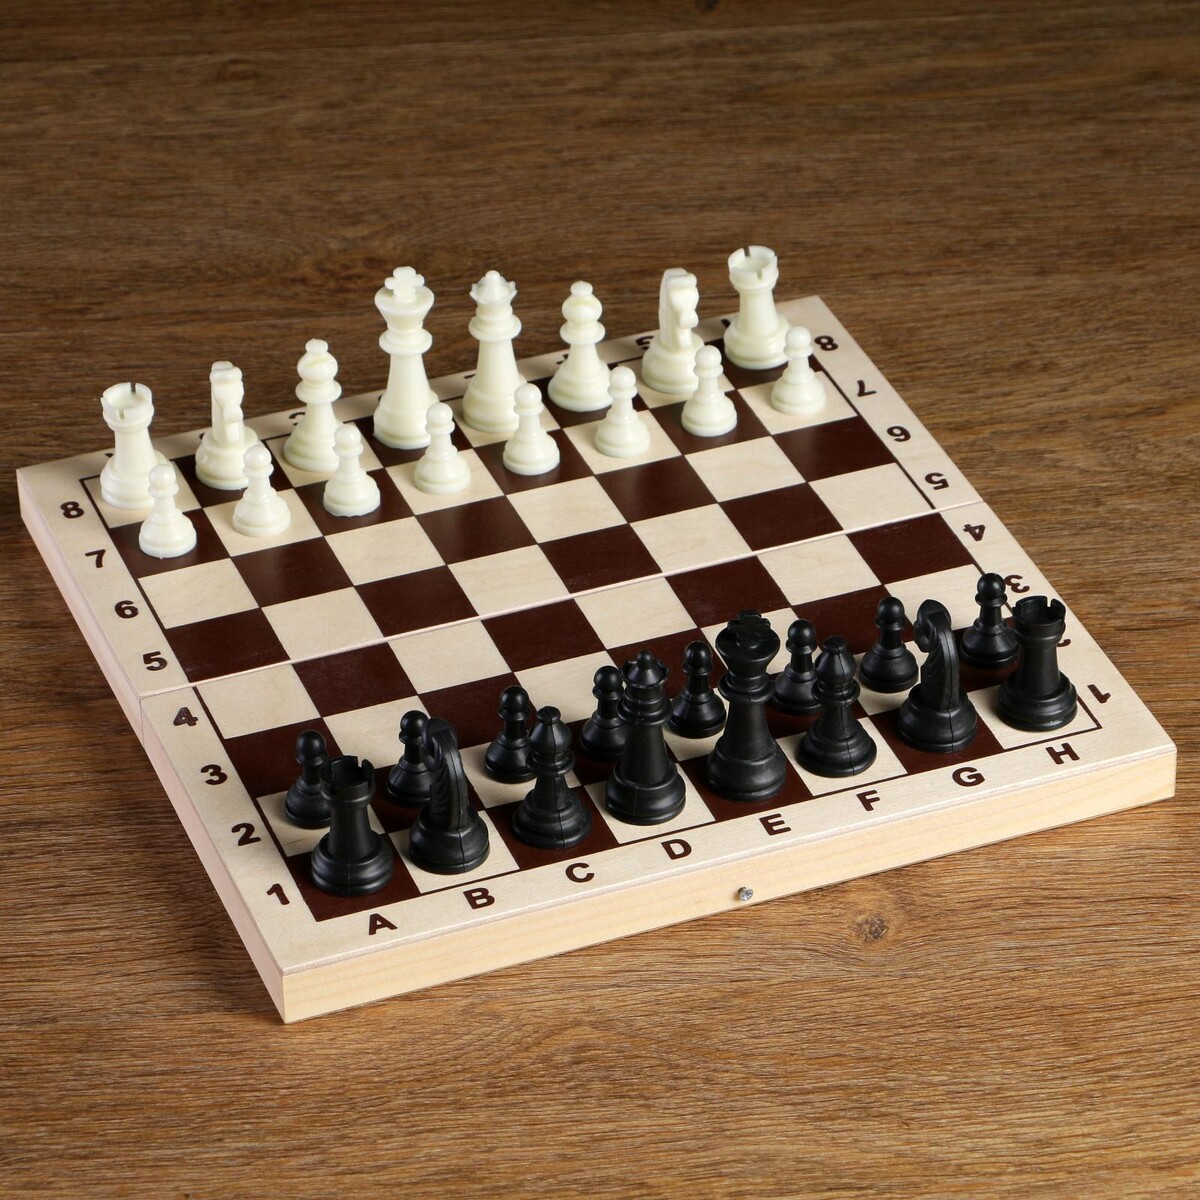 Шахматные фигуры, пластик, король h-6.2 см, пешка h-3 см король гор